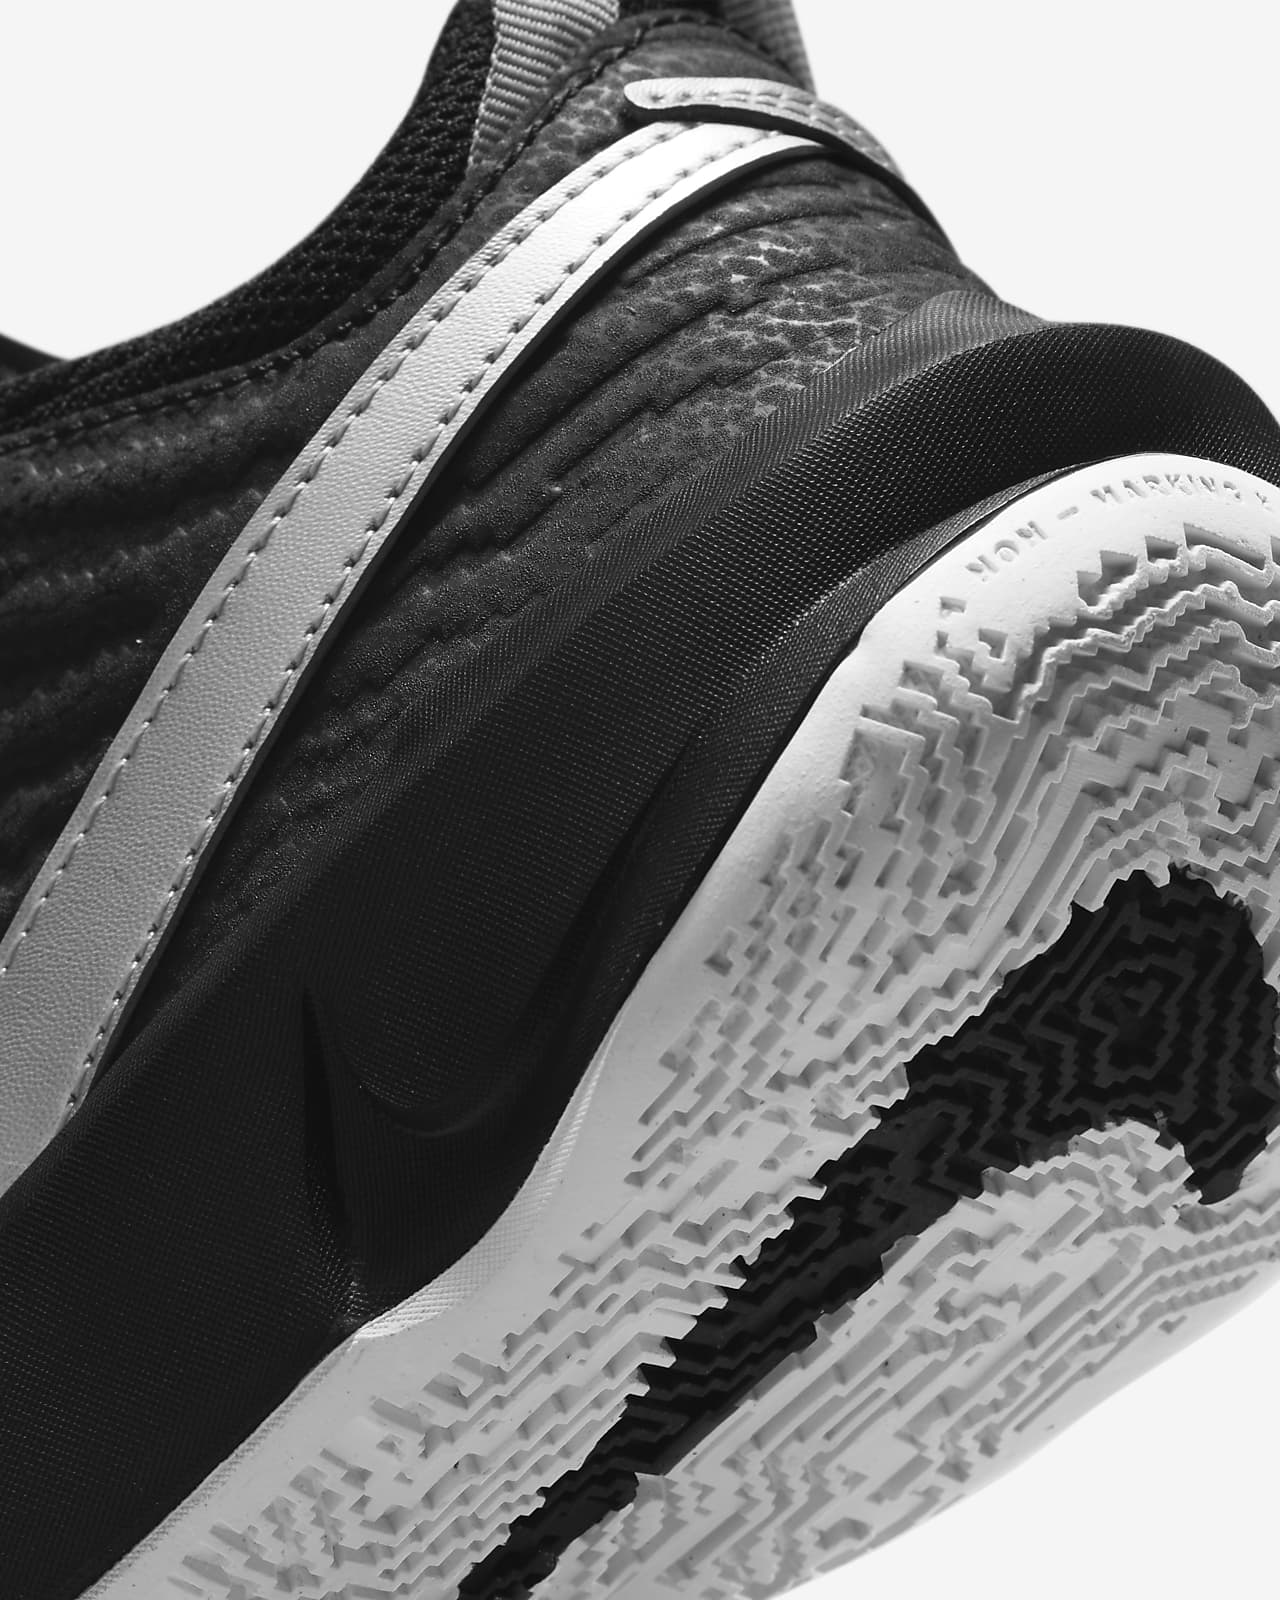 Escudero Supermercado silencio Nike Team Hustle D 10 Zapatillas de baloncesto - Niño/a. Nike ES